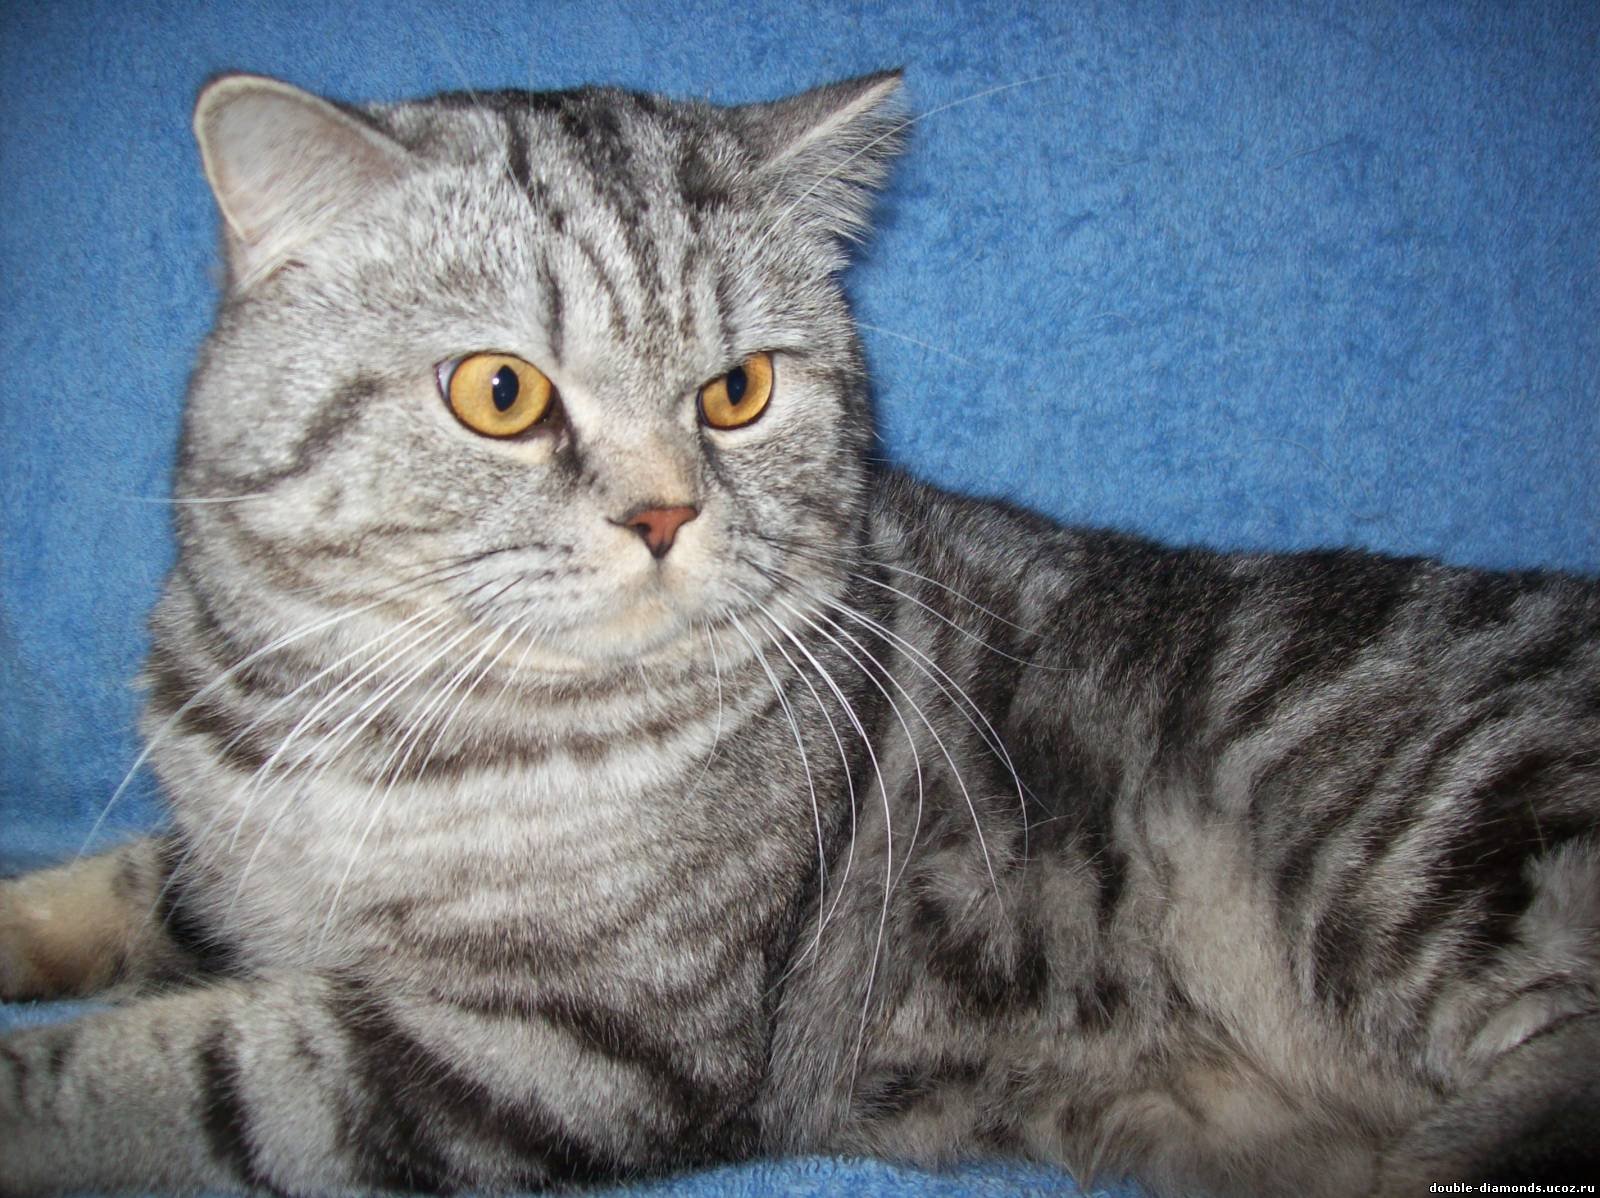 Рассмотрите фотографию кошки породы шотландская прямоухая. Скоттиш страйт вислоухий. Шотландский кот прямоухий. Шотландская вислоухая кошка прямоухая. Шотландская кошка страйт.